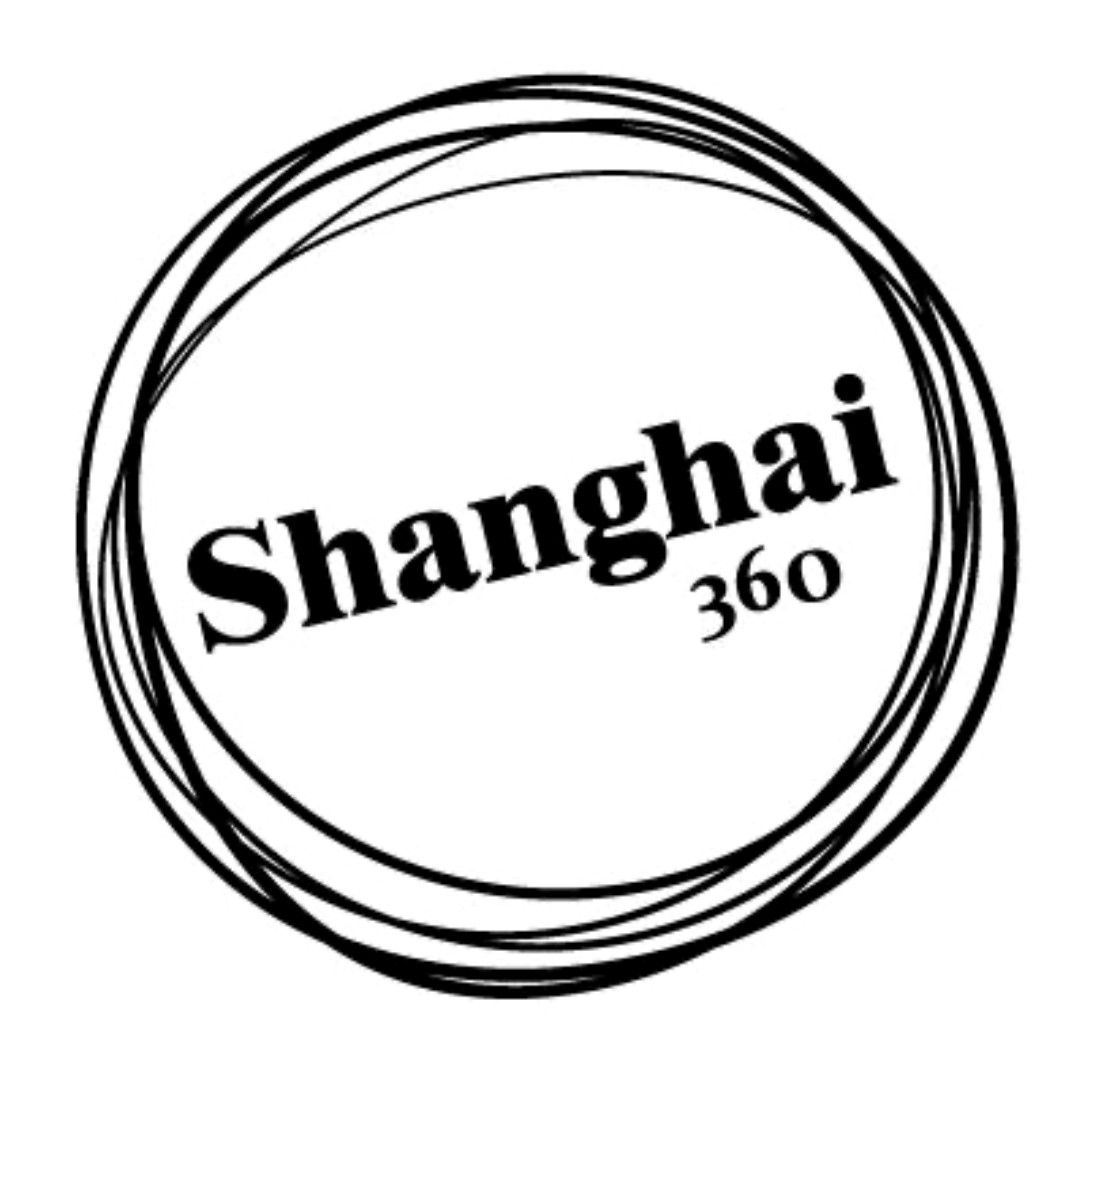 Shanghai 360 Logo